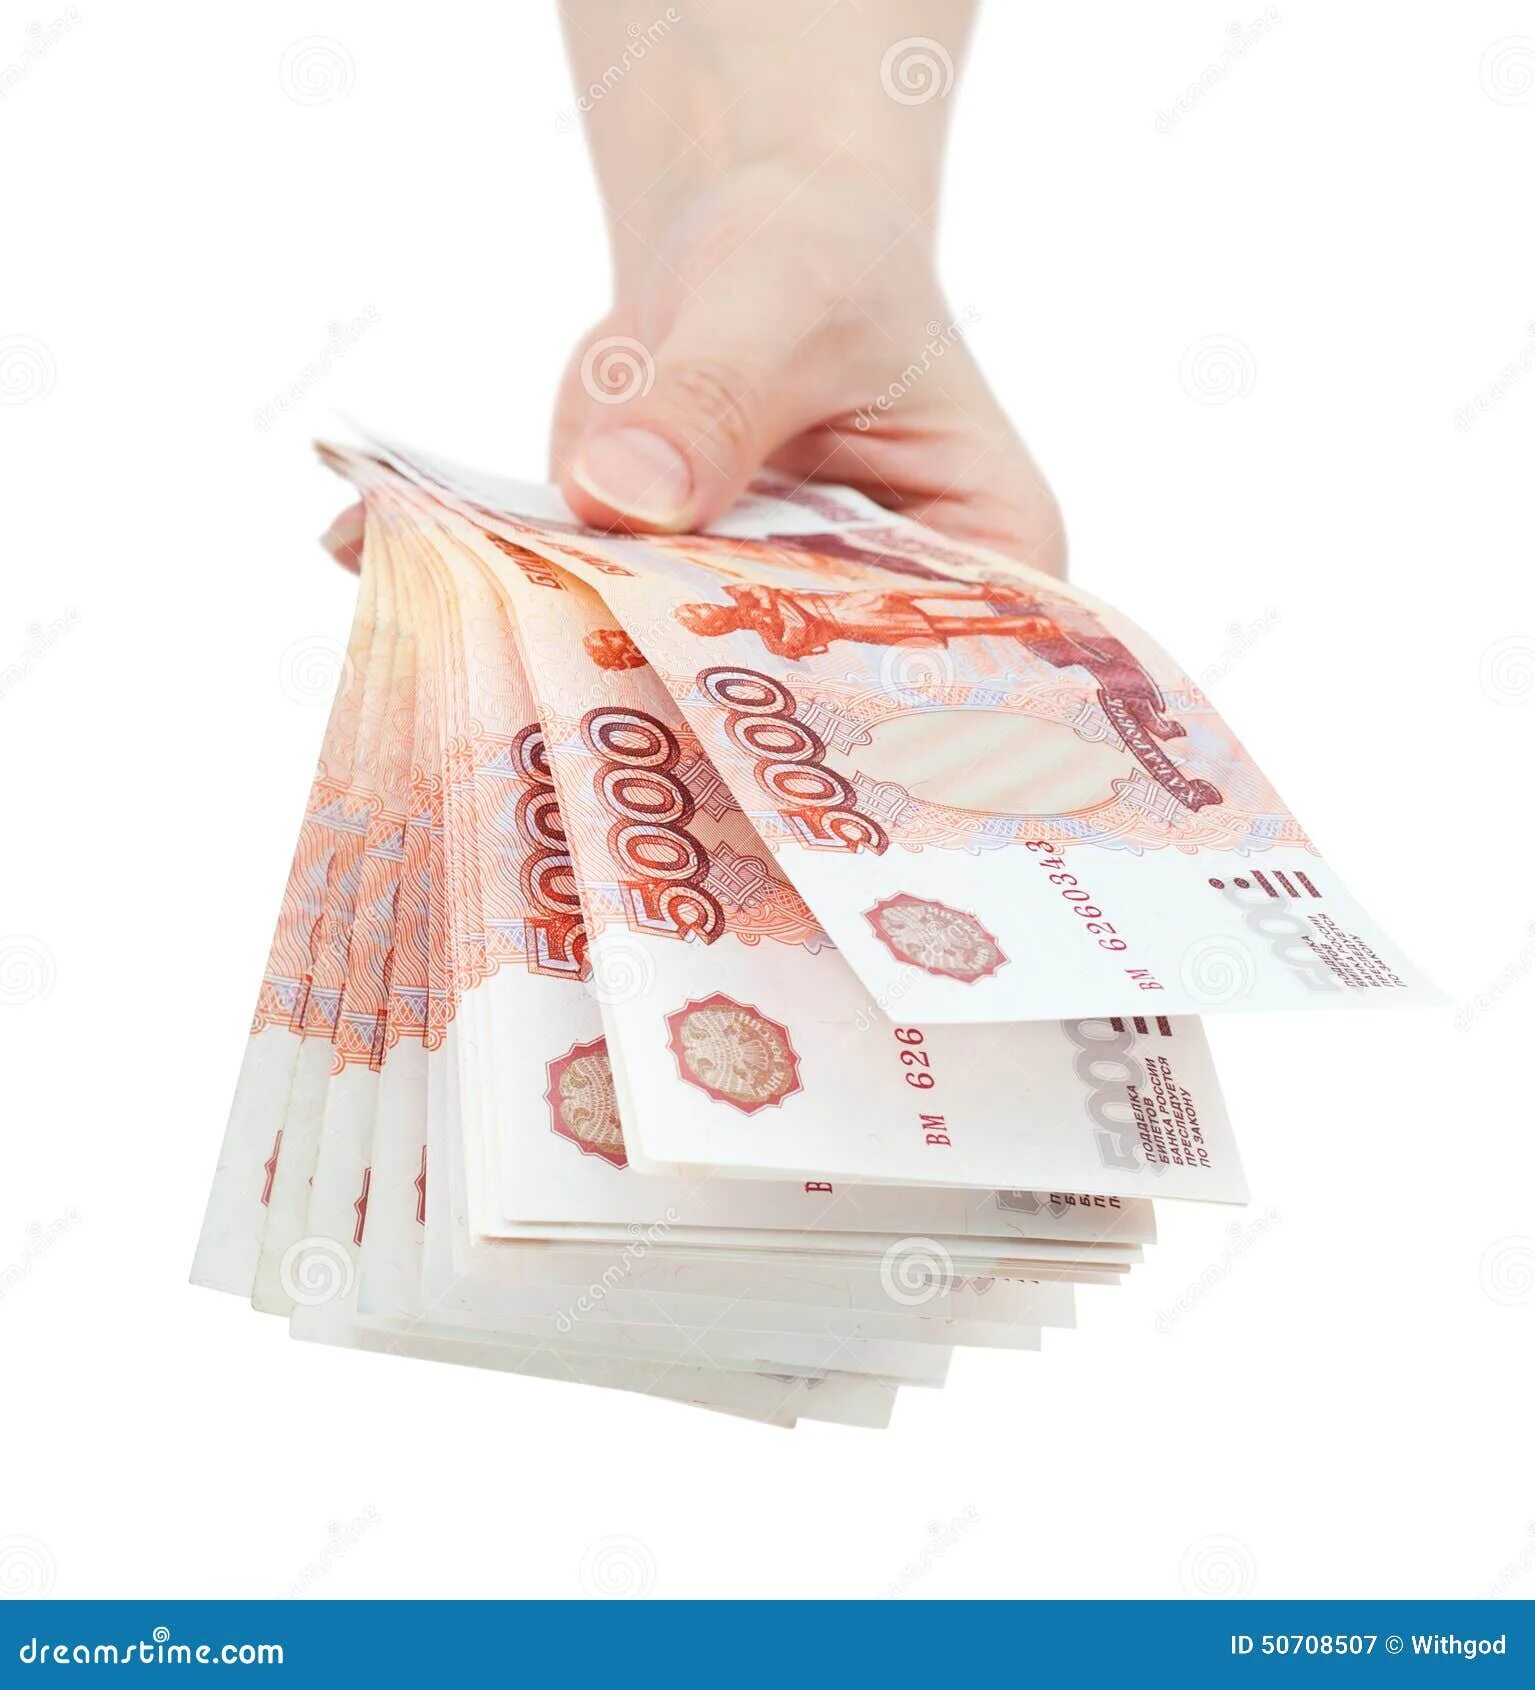 Деньги в руках. Пачка рублей в руках. Деньги рубли. Крупные купюры на белом фоне.